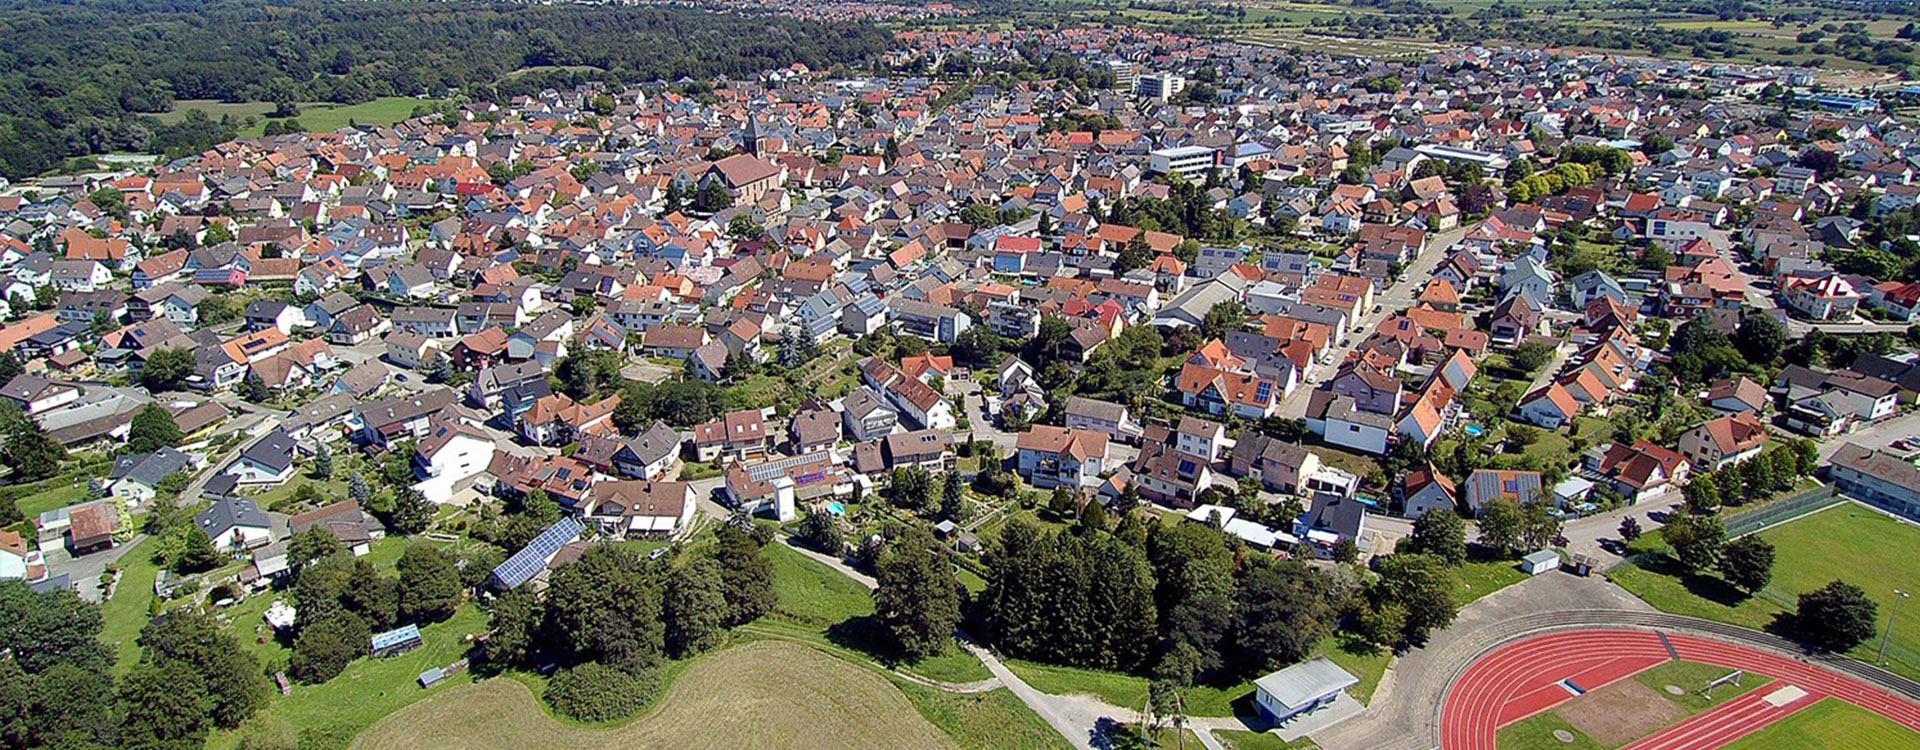 Otigheim